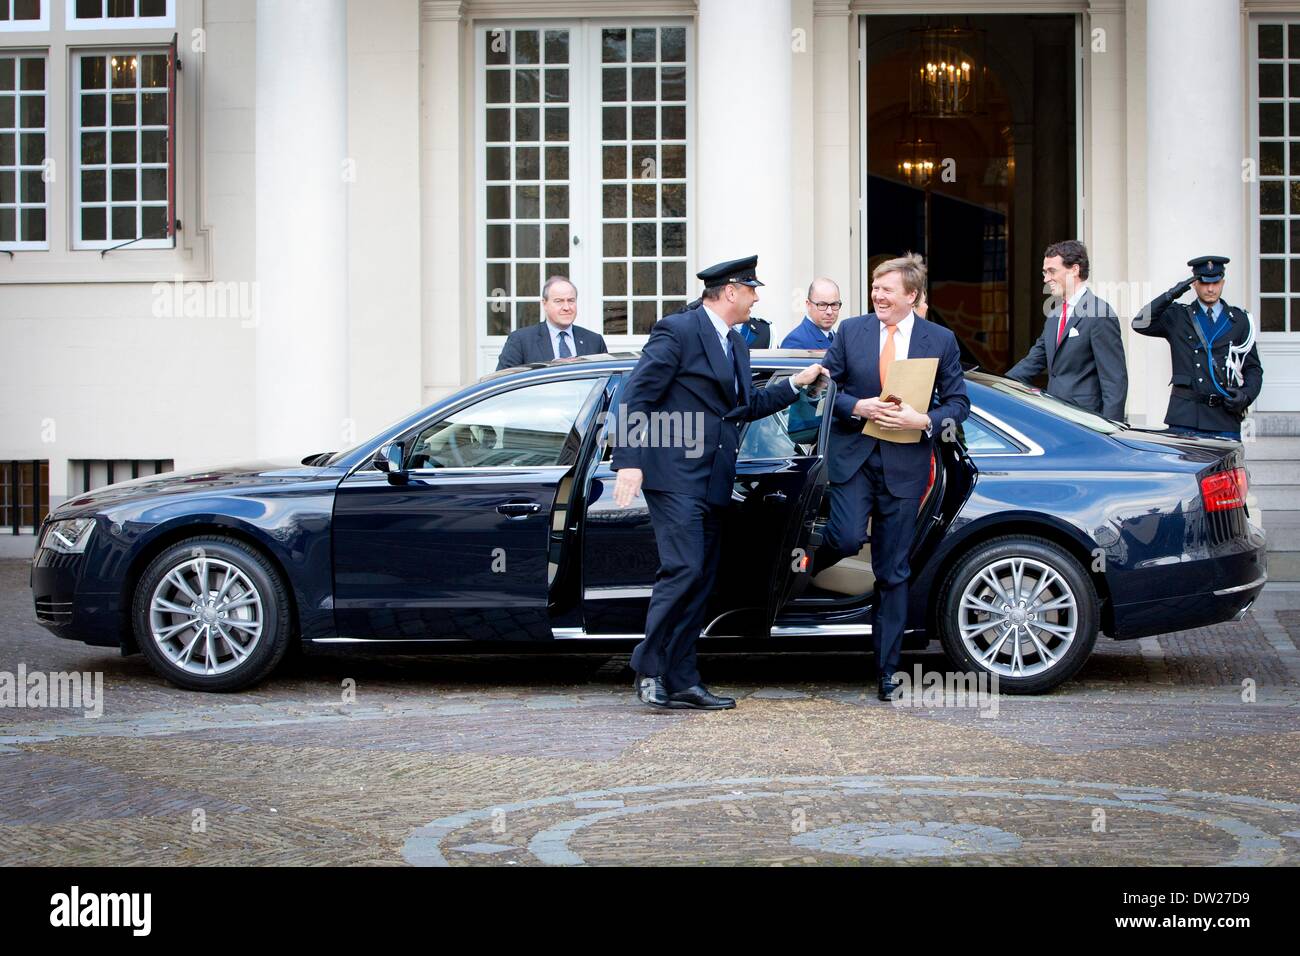 La Haye, aux Pays-Bas. 25 Jan, 2014. Nouvelle voiture royale du roi, Audi  A8, considéré comme le roi Willem-Alexander et Maxima La reine des Pays-Bas  bienvenue les médaillés olympiques au Palais de